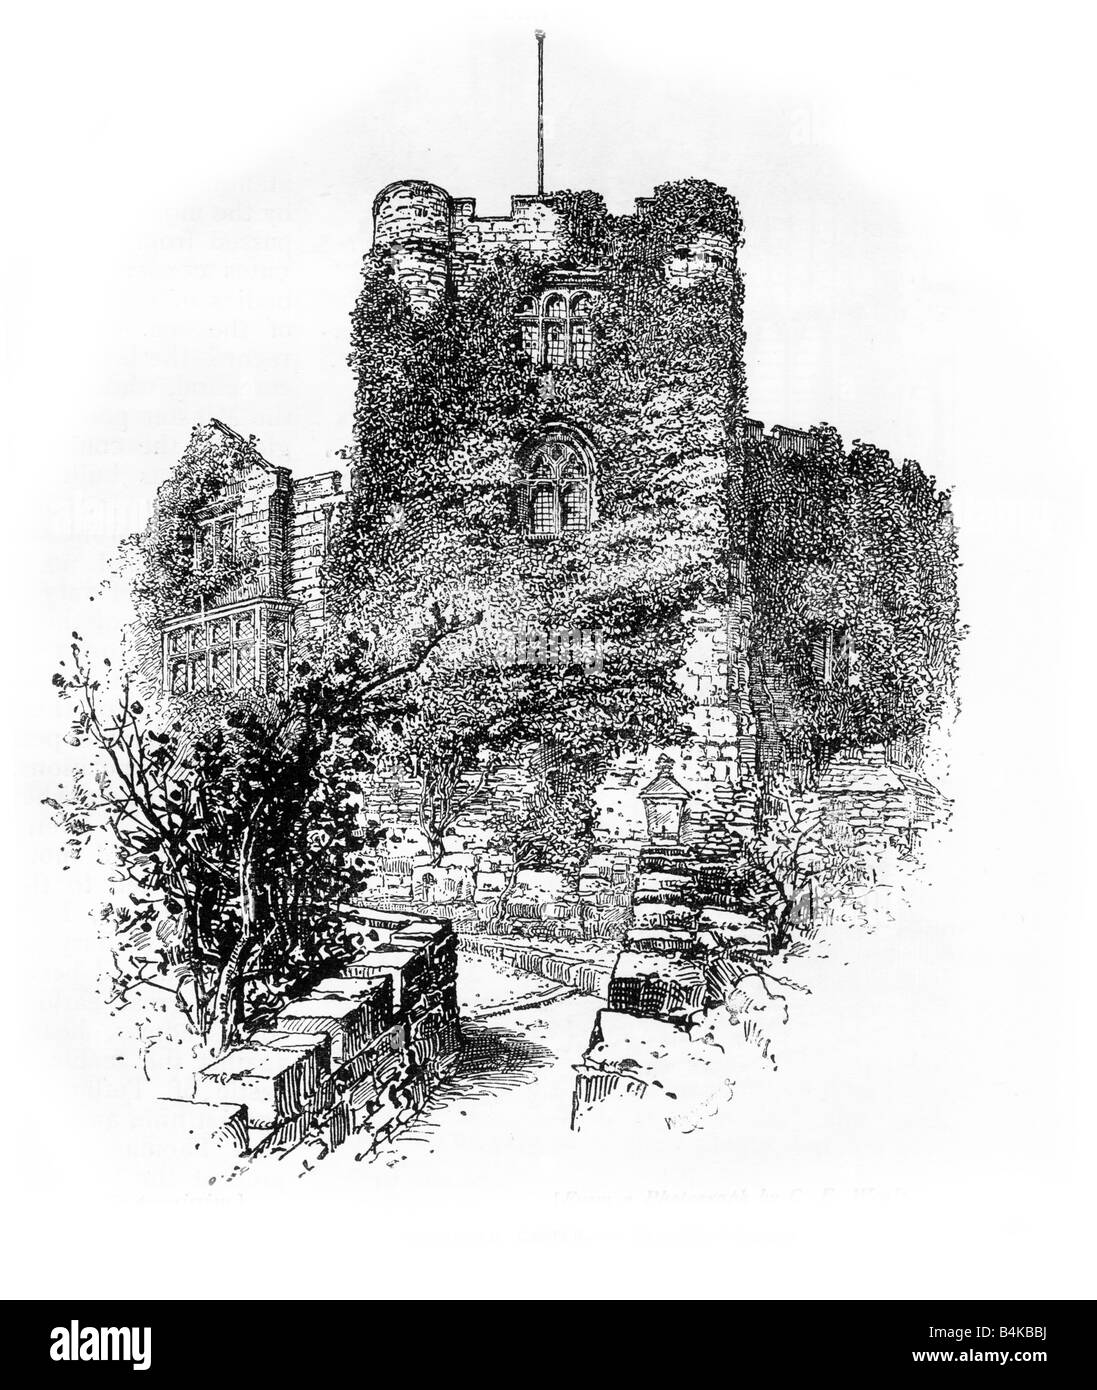 Castillo de Tamworth Ilustración en 1890 Foto de stock